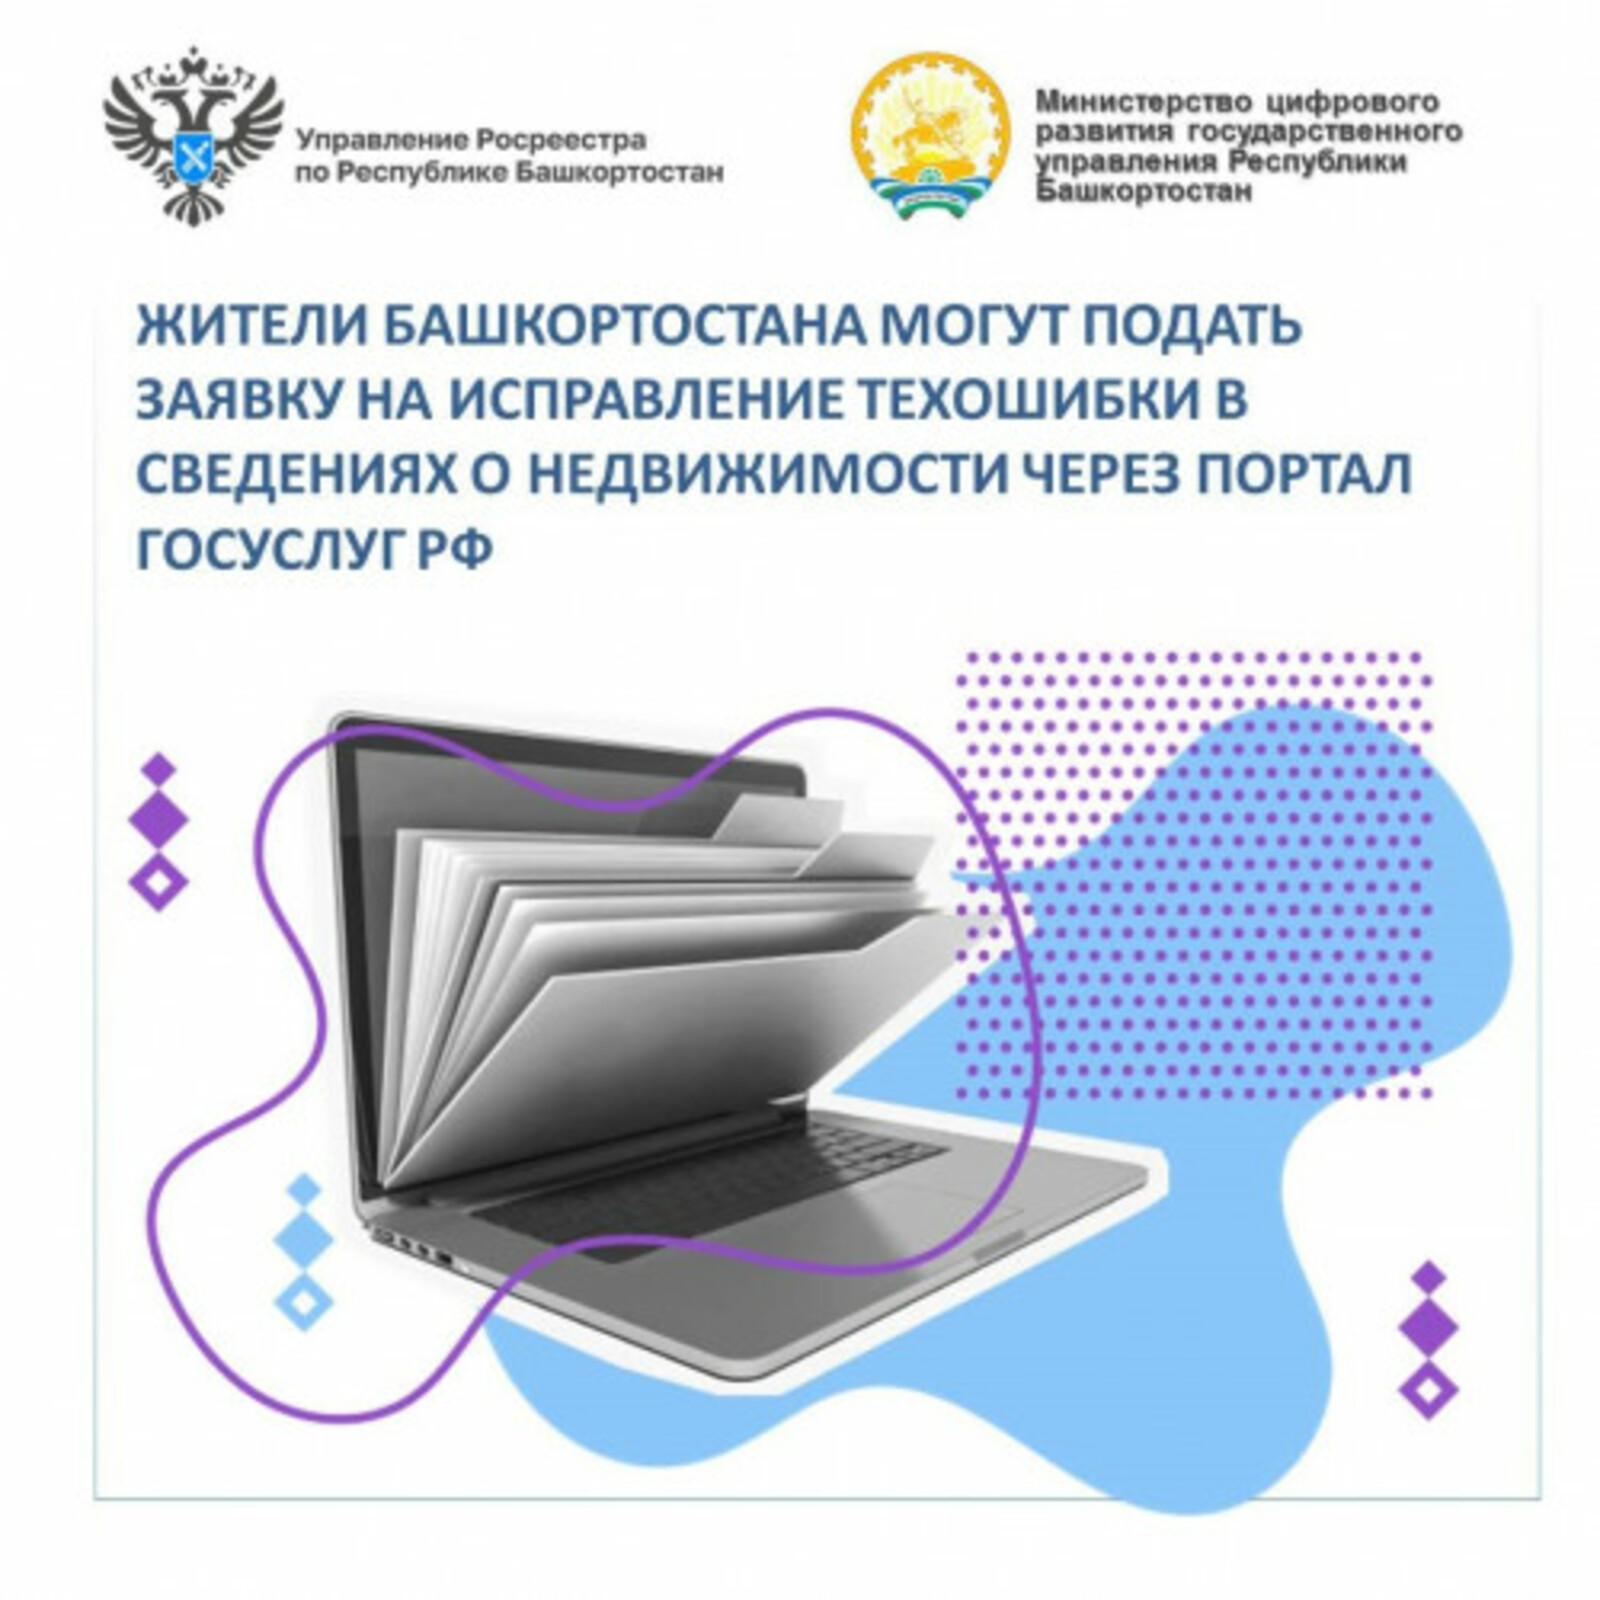 Жители Башкирии могут подать заявку на исправление технической ошибки в сведениях о недвижимости через портал Госуслуг РФ